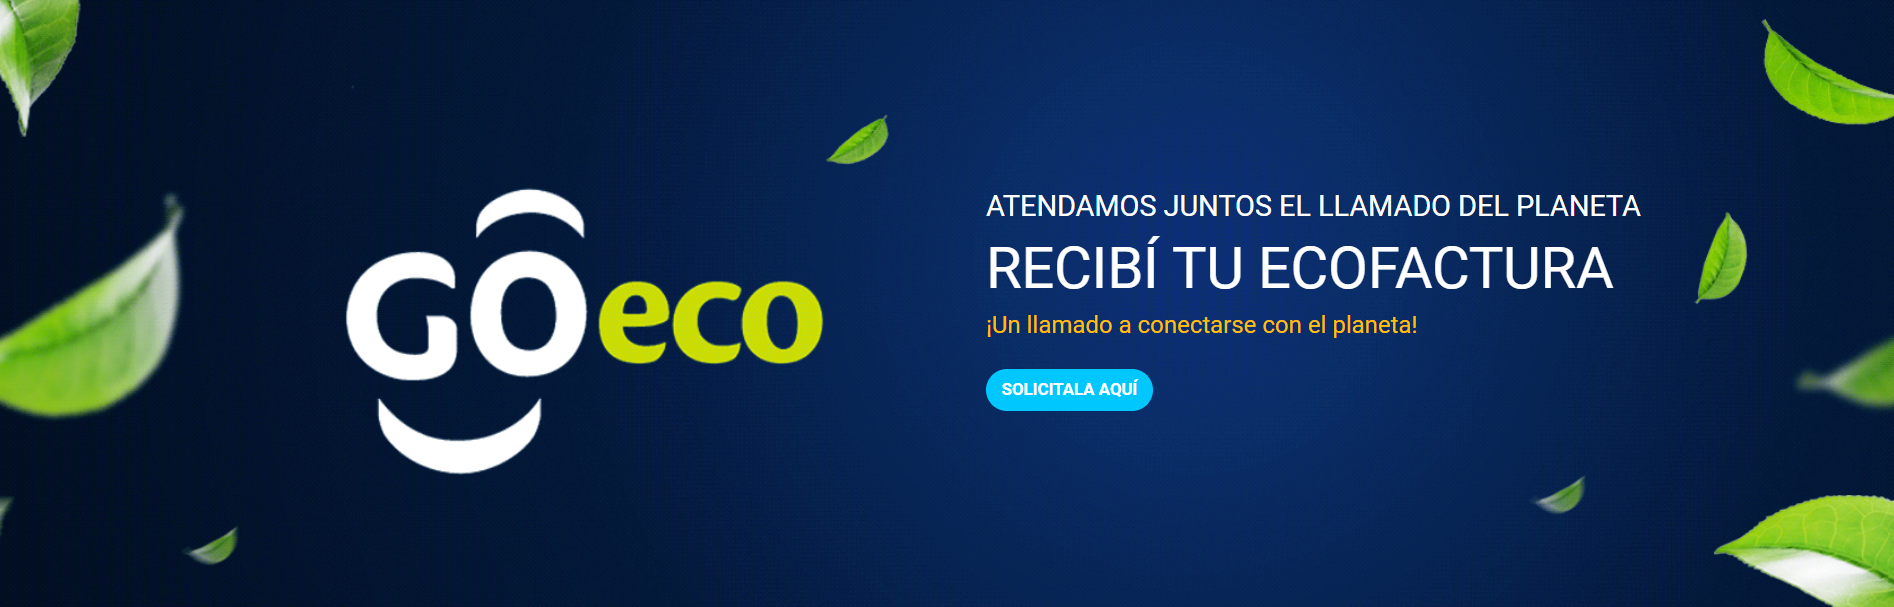 Eco Factura Registro - Tigo Nicaragua